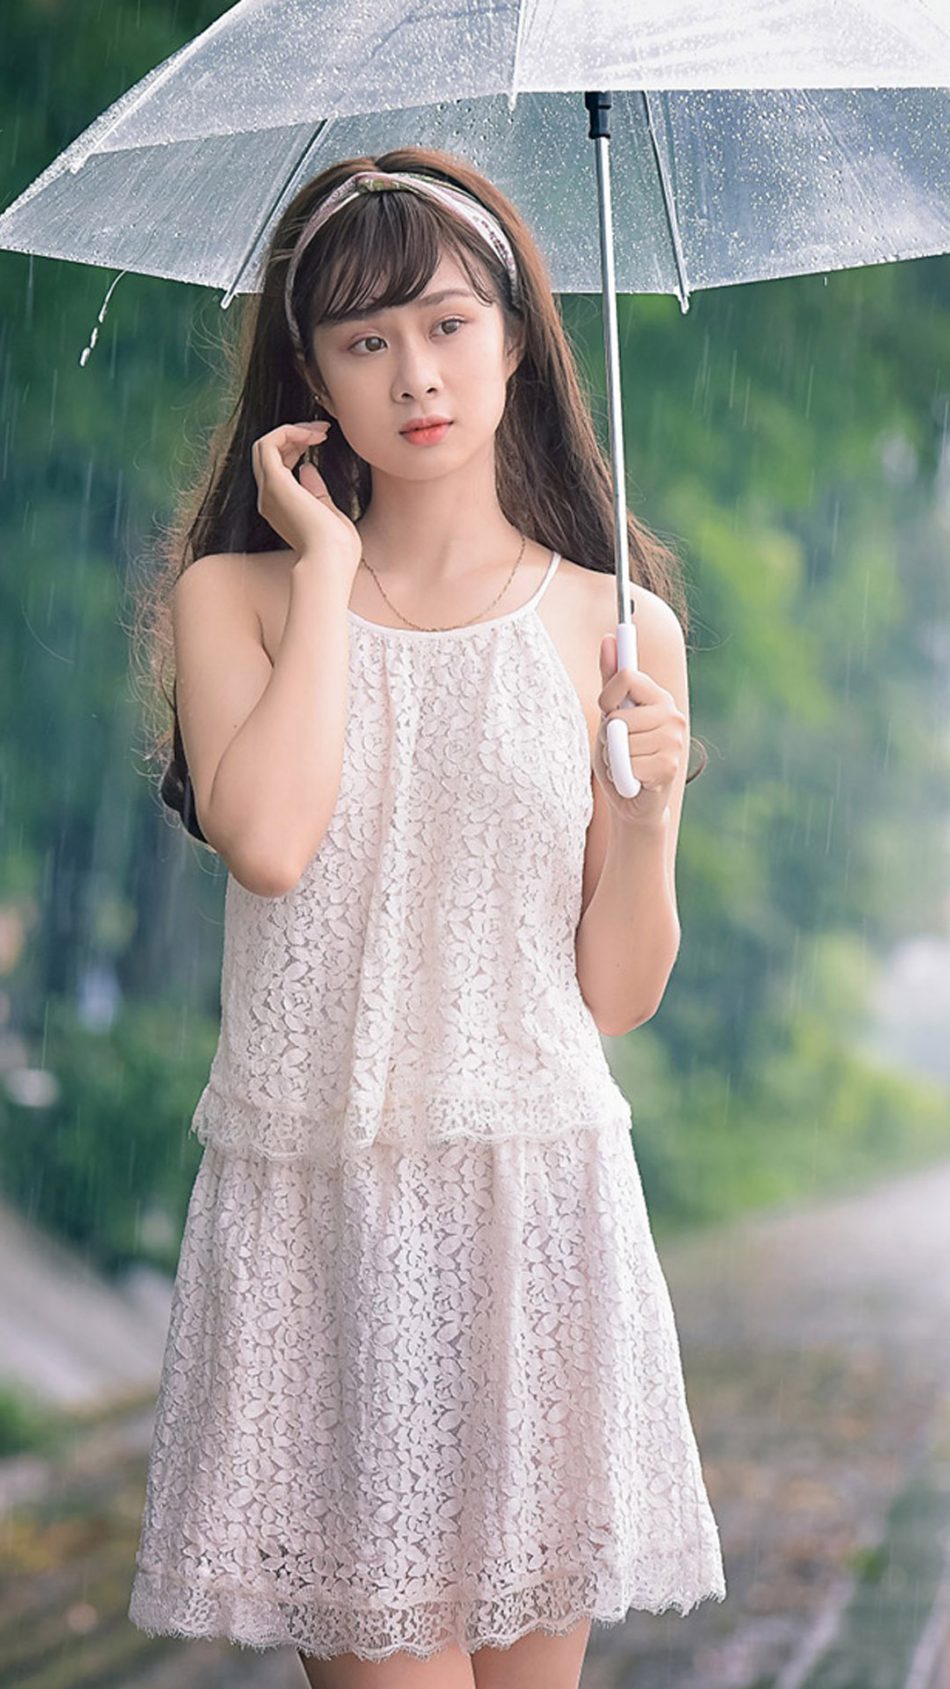 Cute Asian Girl Posing In Rain HD Mobile Wallpaper